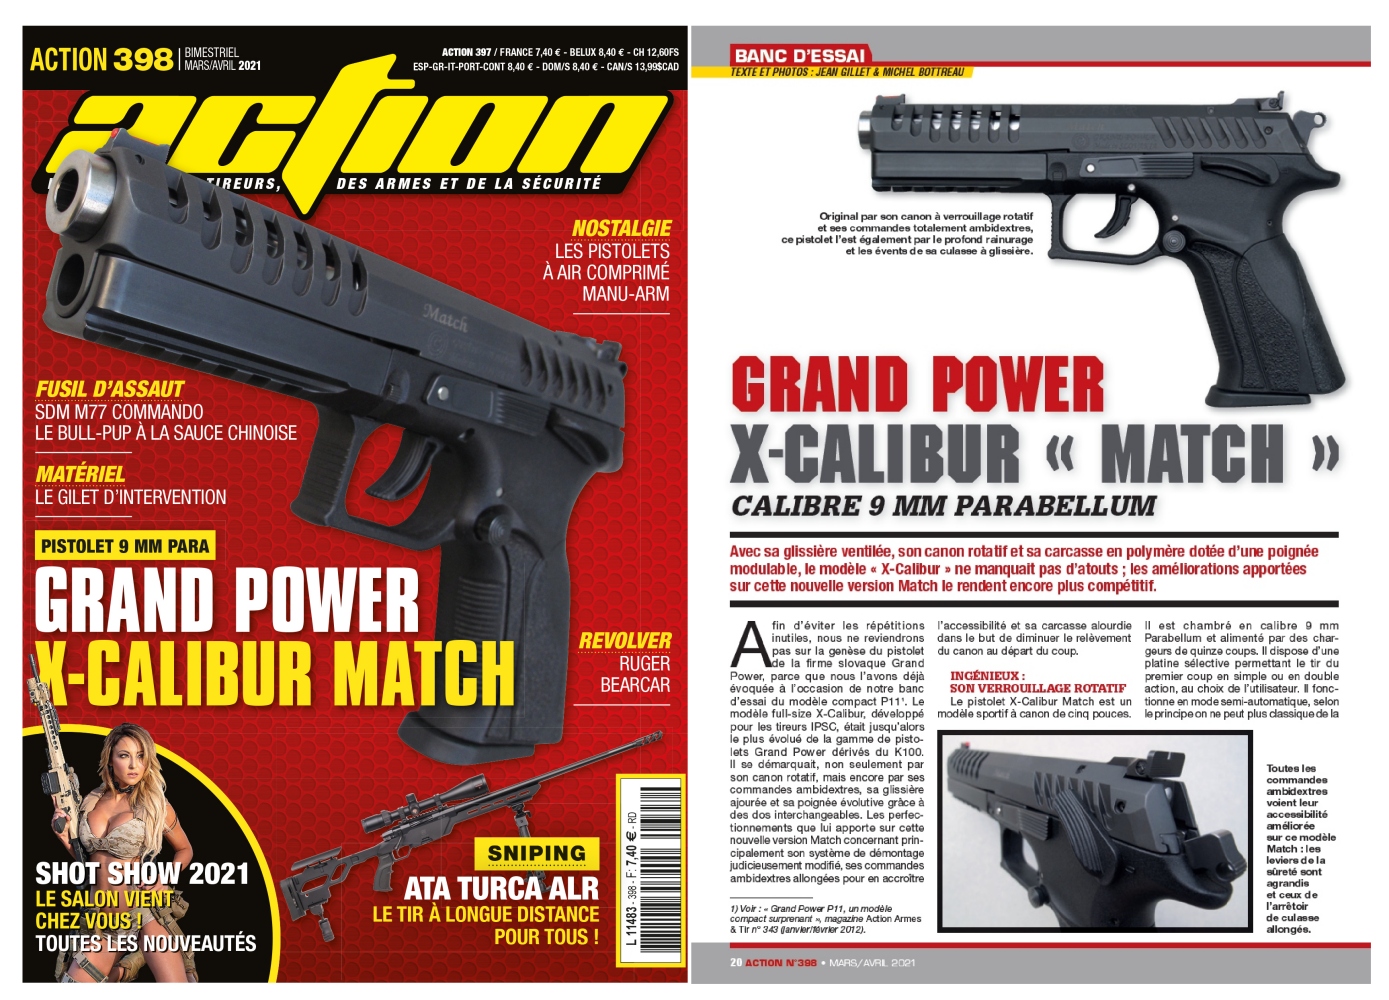 Le banc d’essai du pistolet Grand Power X-Calibur Match a été publié sur 6 pages dans le magazine Action n°398 (mars/avril 2021).